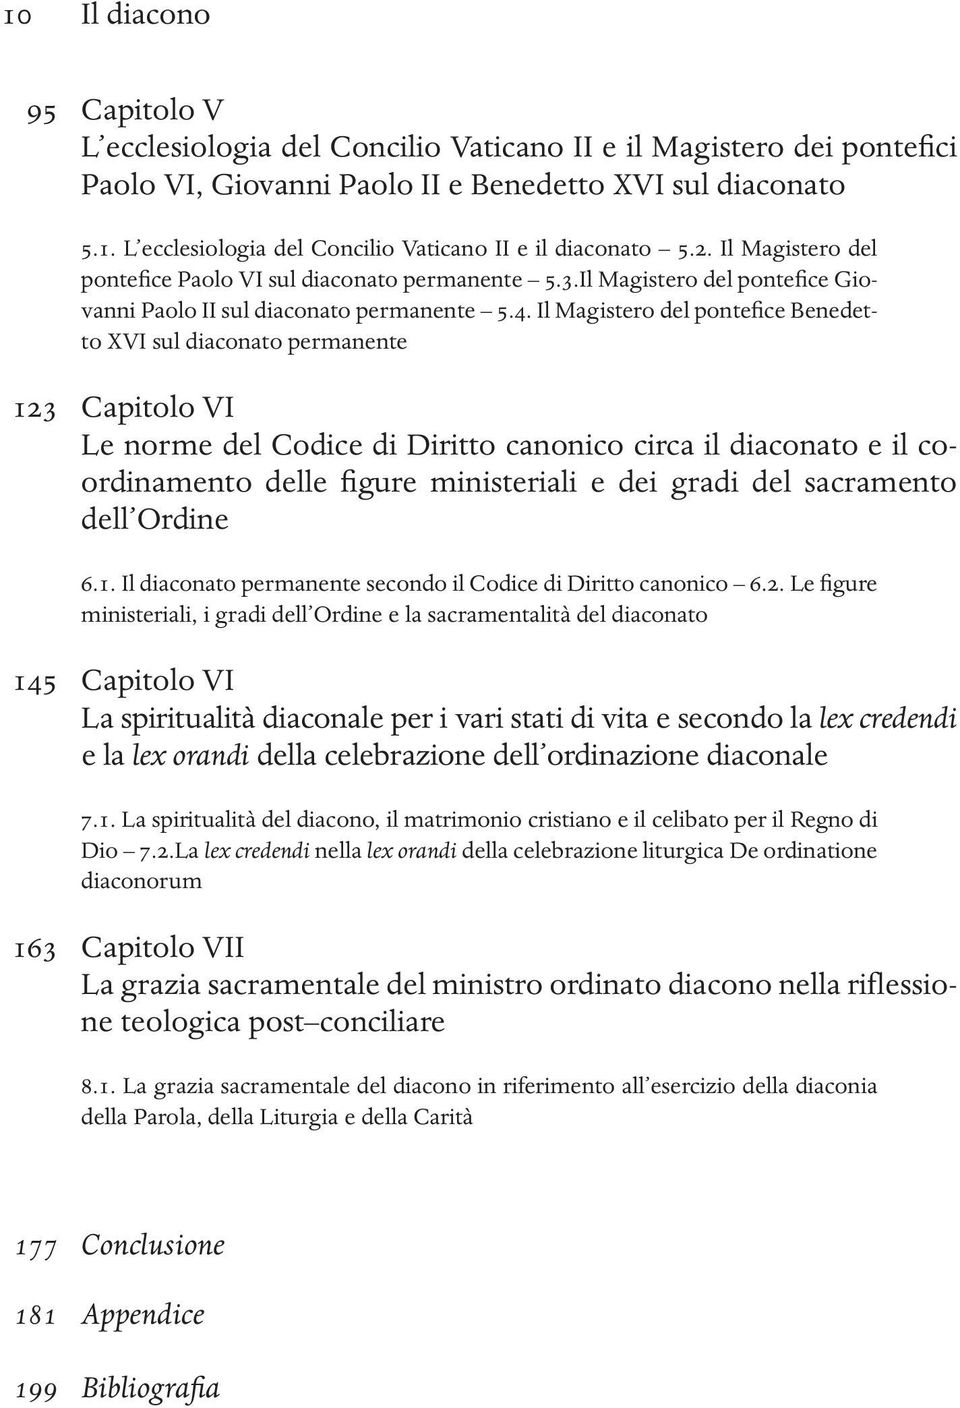 Il Magistero del pontefice Benedetto XVI sul diaconato permanente 123 Capitolo VI Le norme del Codice di Diritto canonico circa il diaconato e il coordinamento delle figure ministeriali e dei gradi